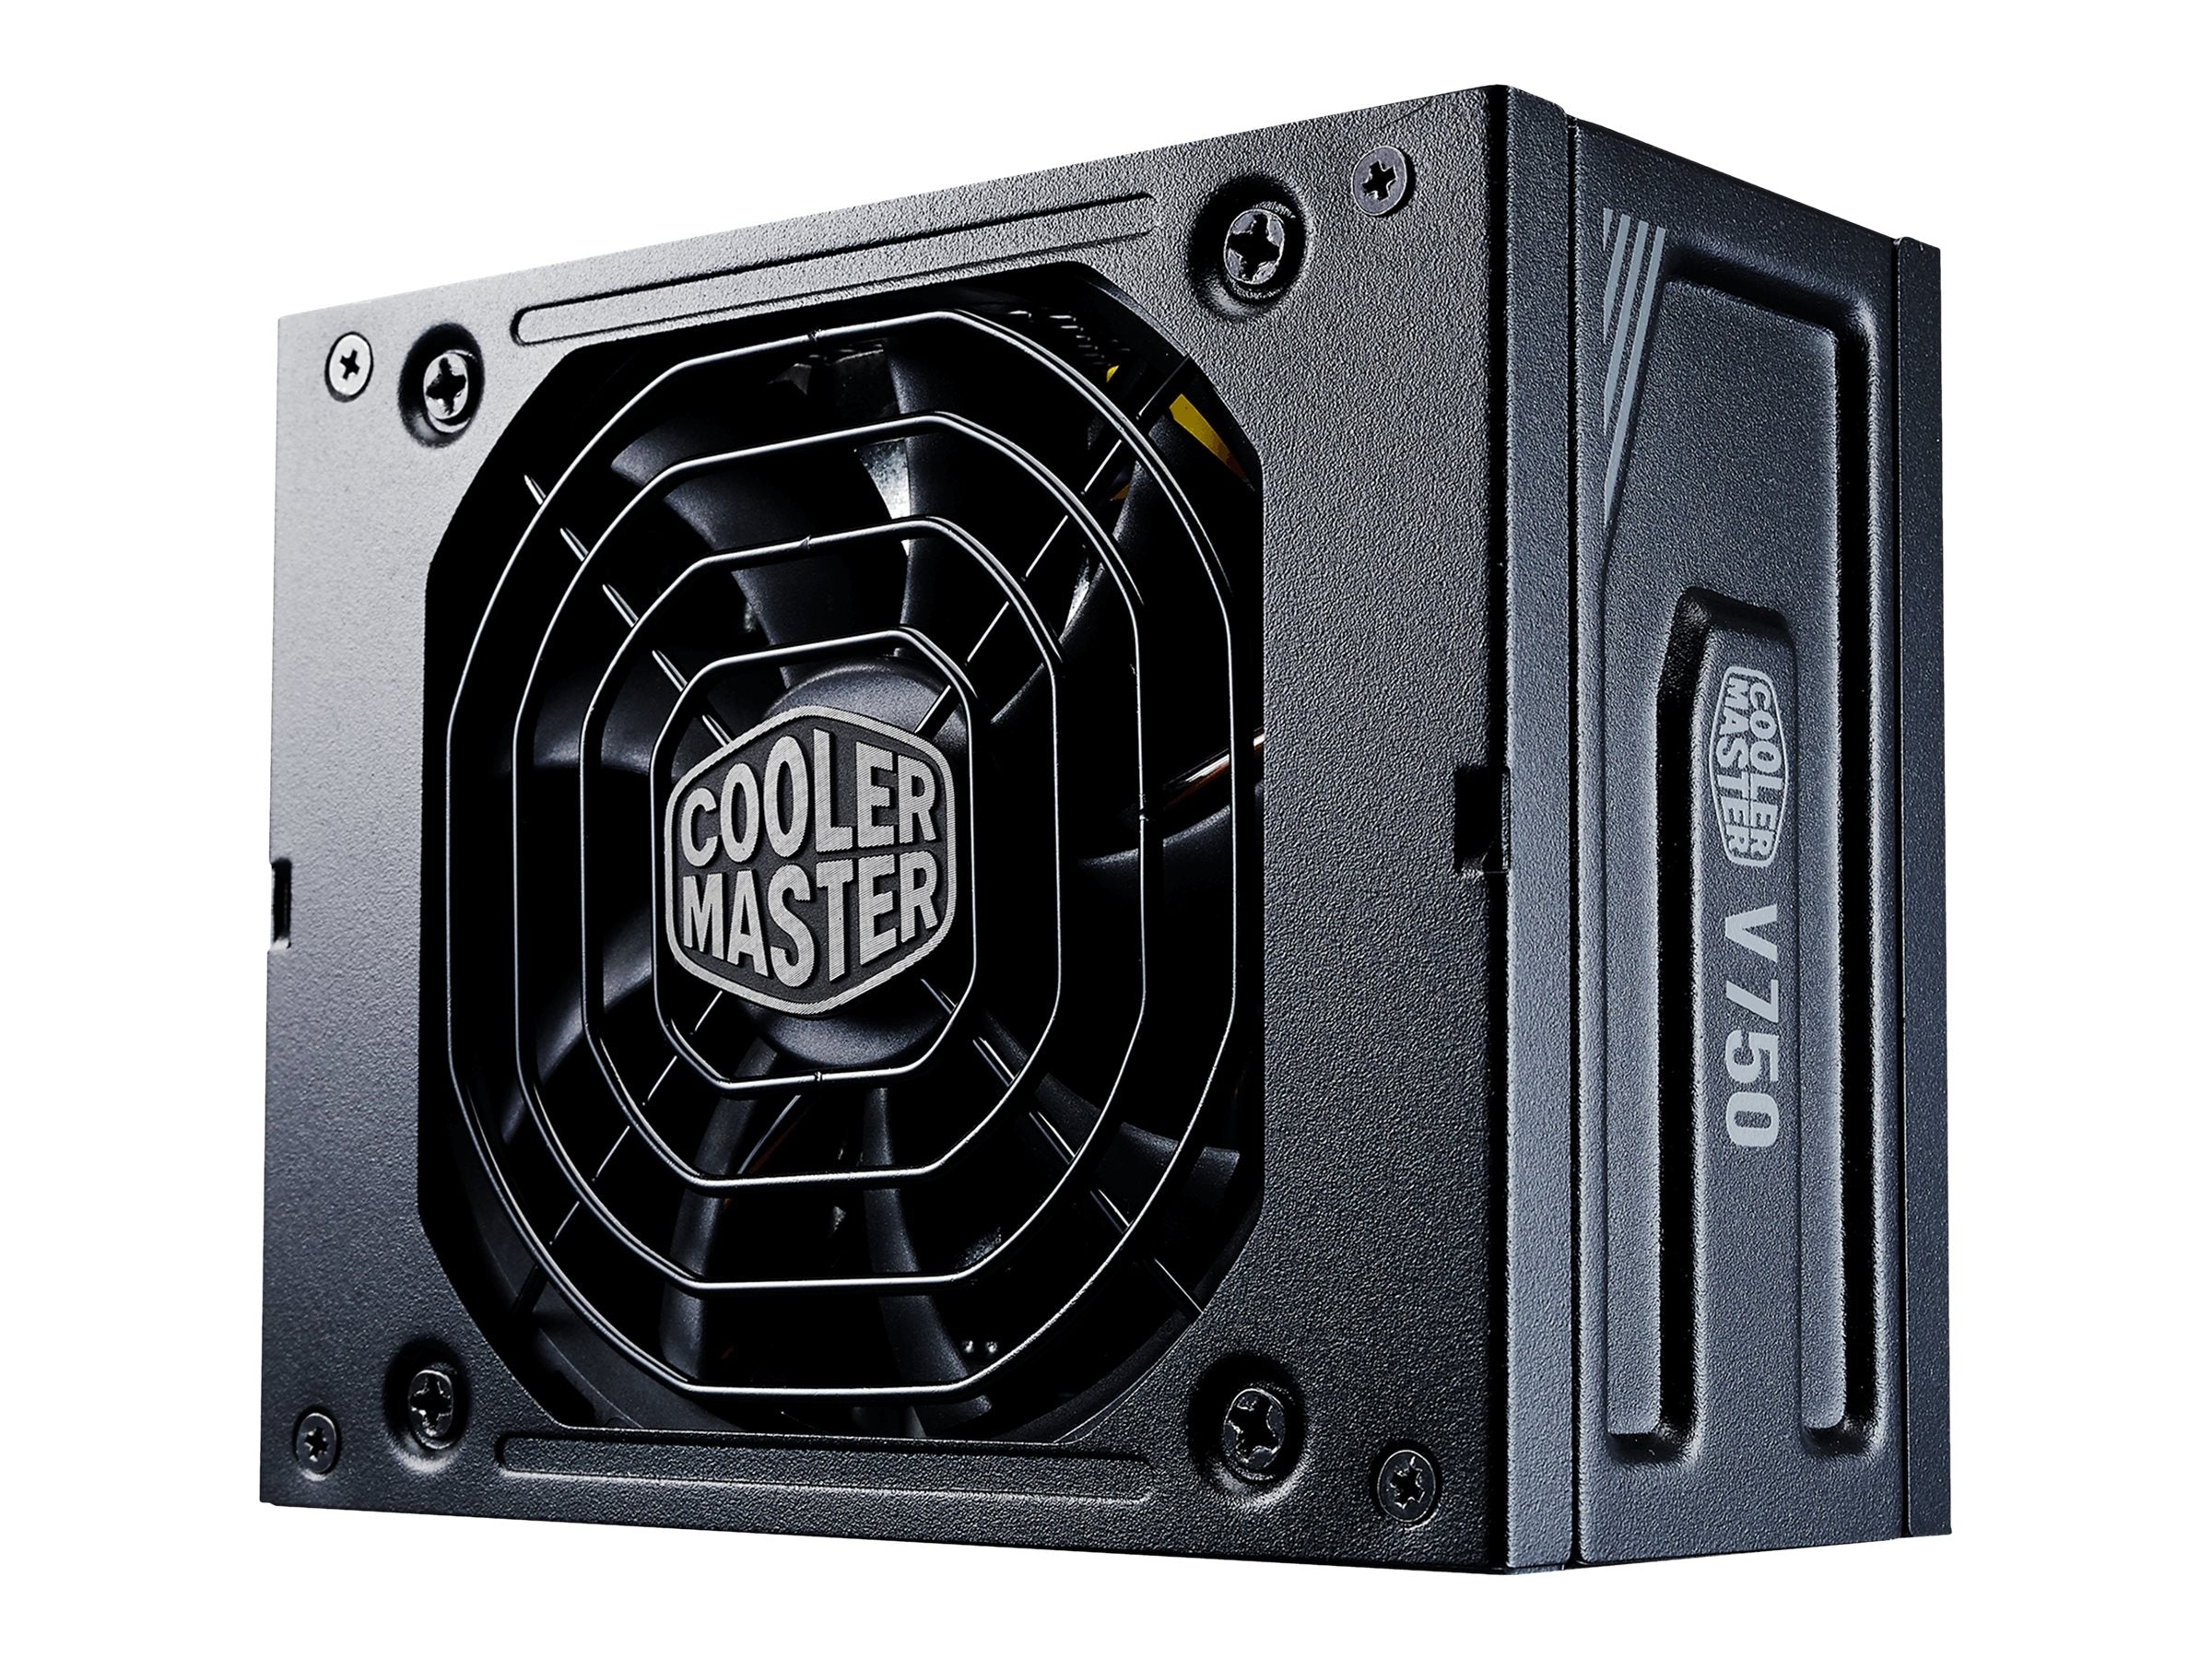 PSU Cooler Master V750 SFX Gold Cooler Master